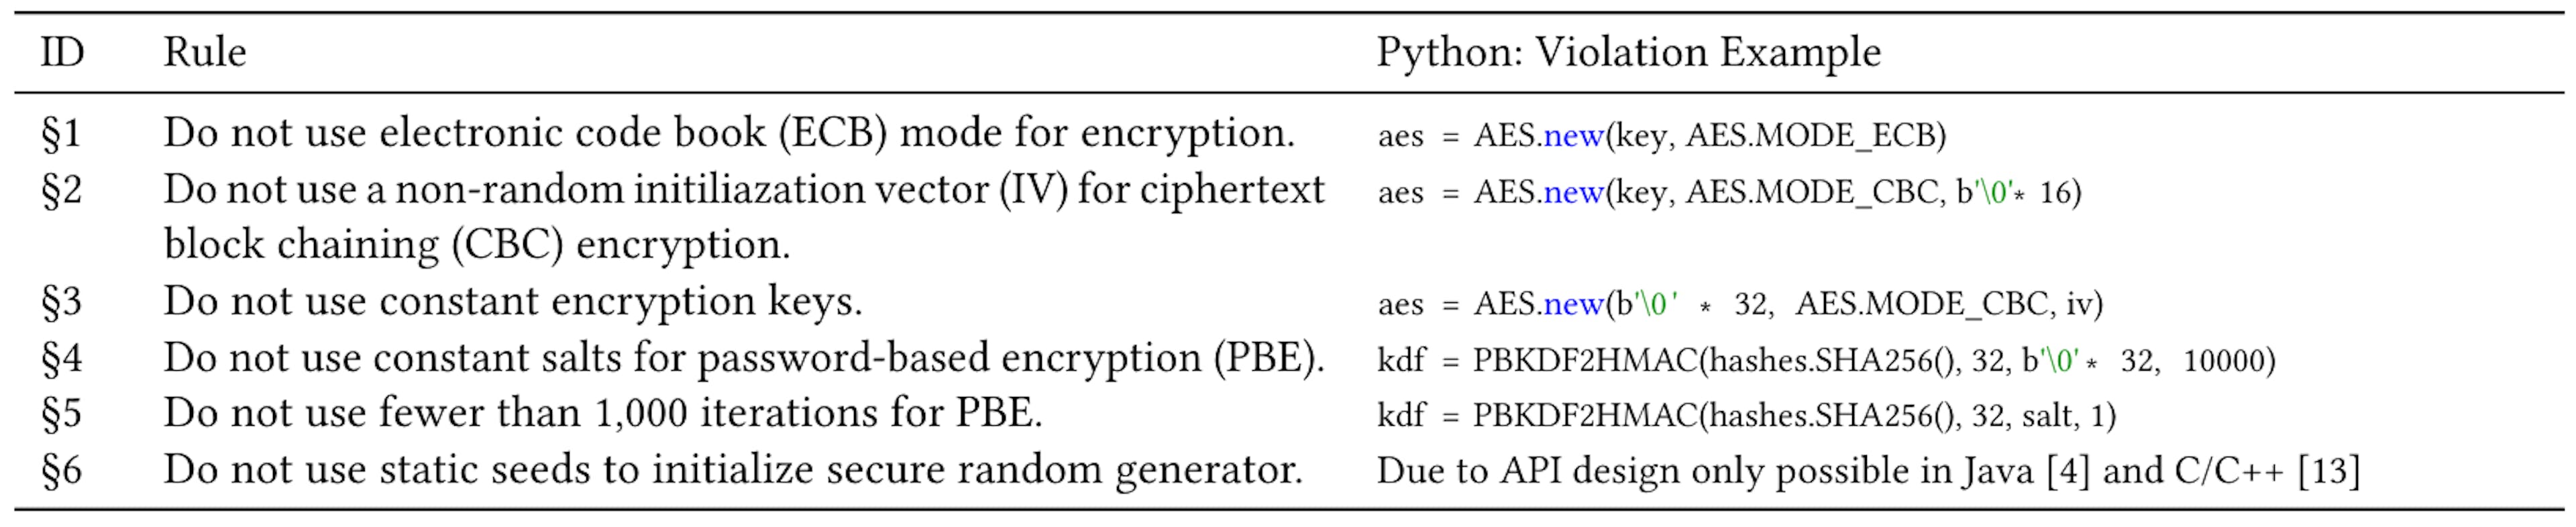 表1: JavaとCでよく議論される6つの暗号の誤用[4, 13]とPythonでの違反例。